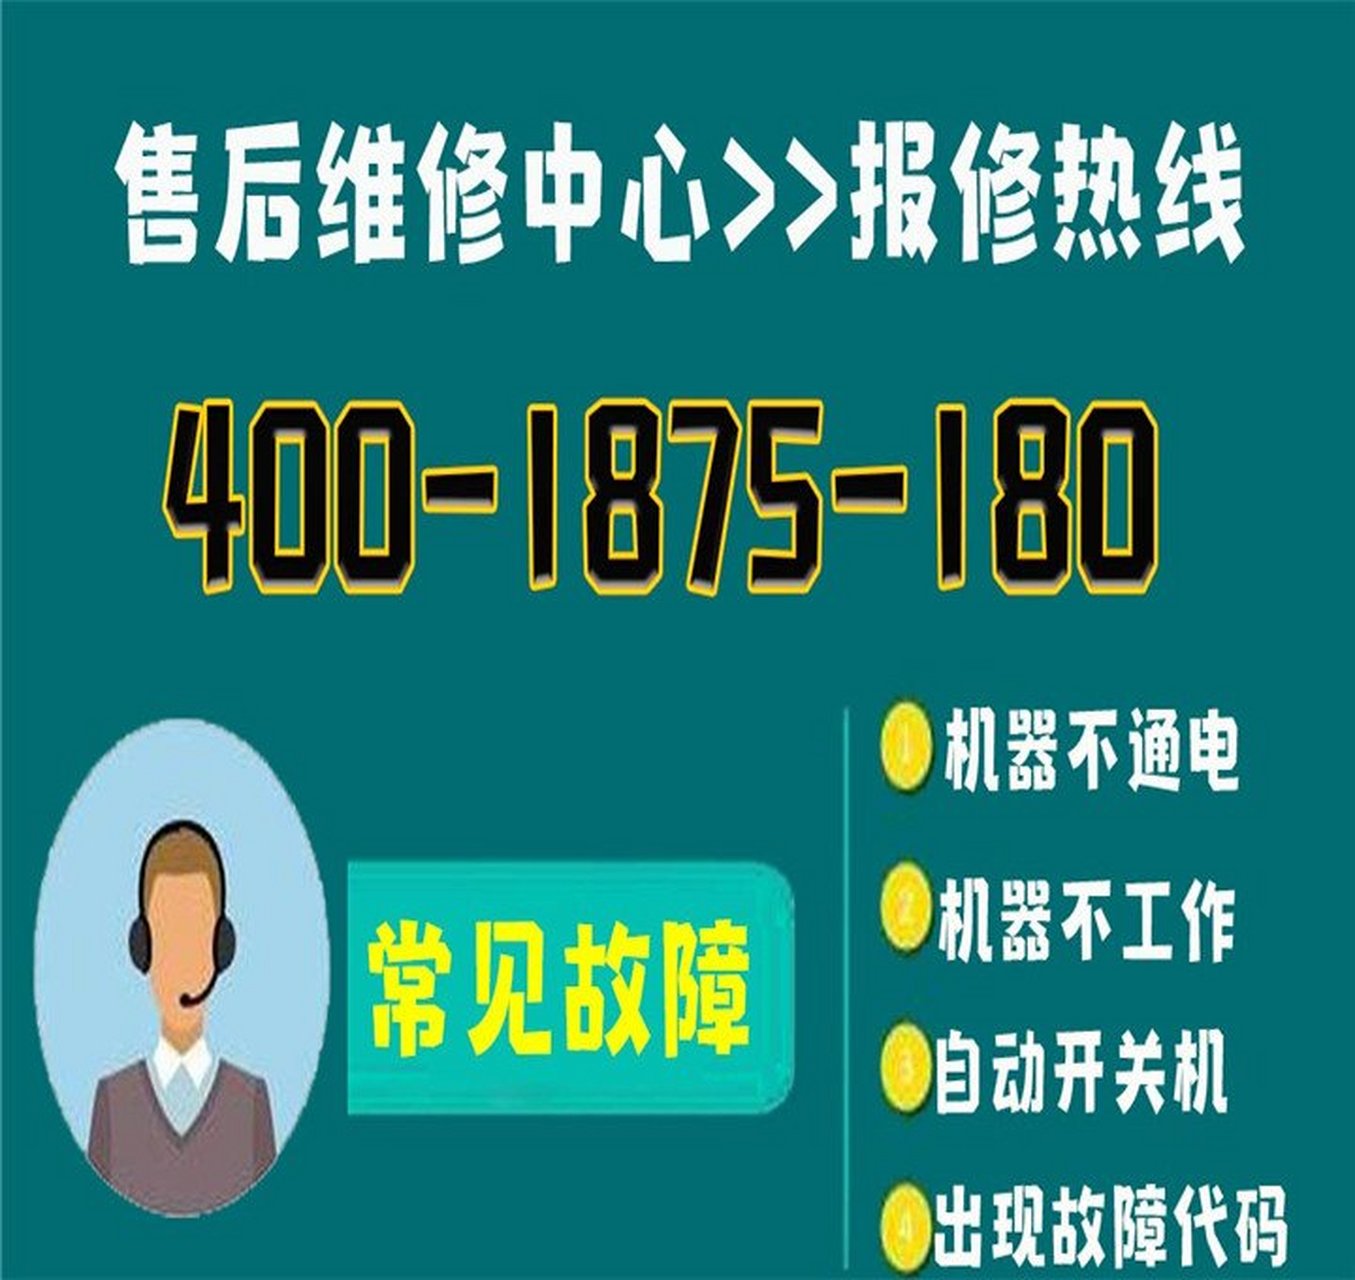 杭州大金空调24小时售后服务电话的简单介绍